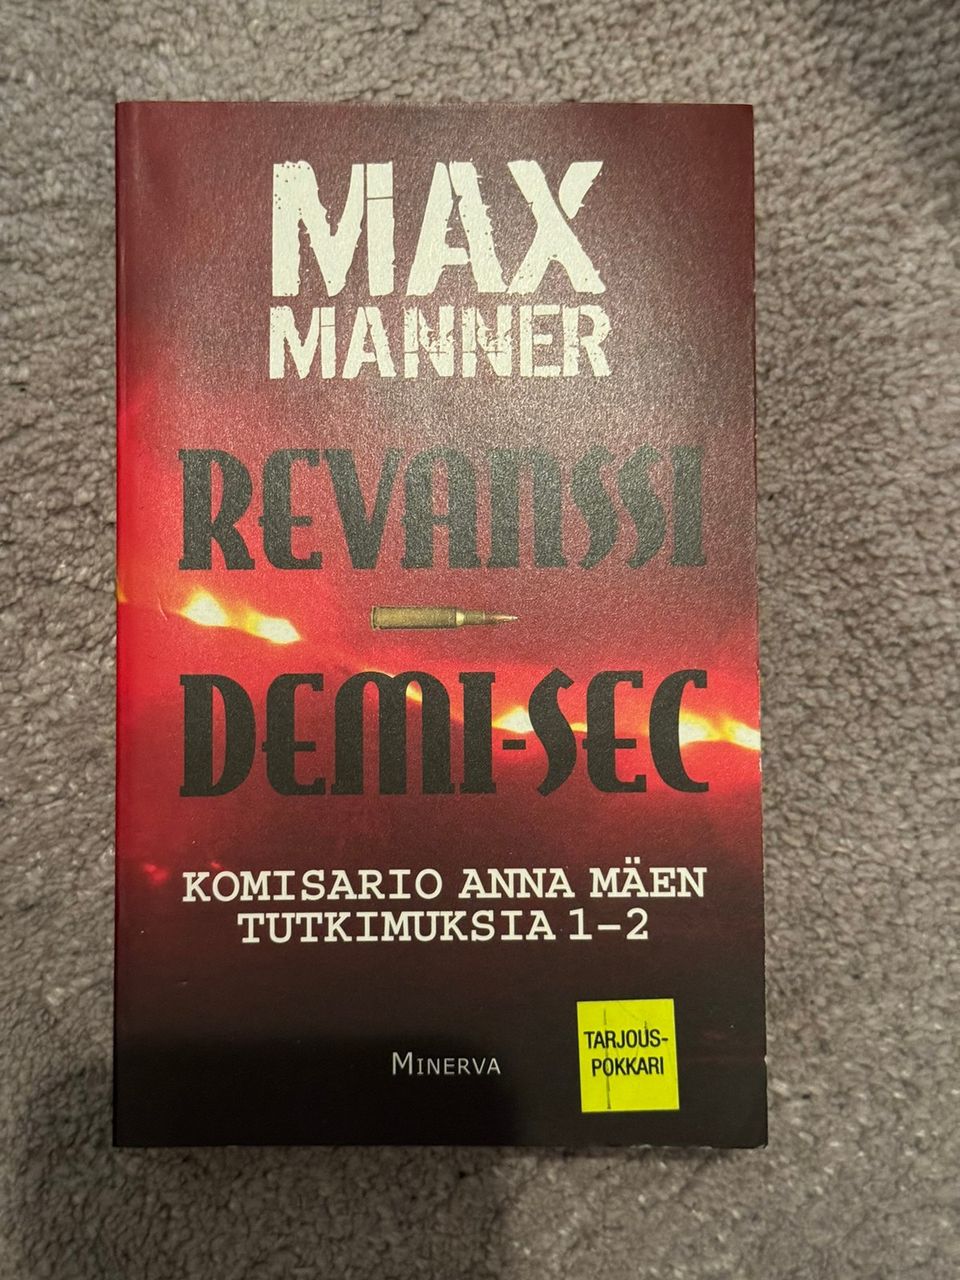 Max Manner: Revanssi / Demi-sec